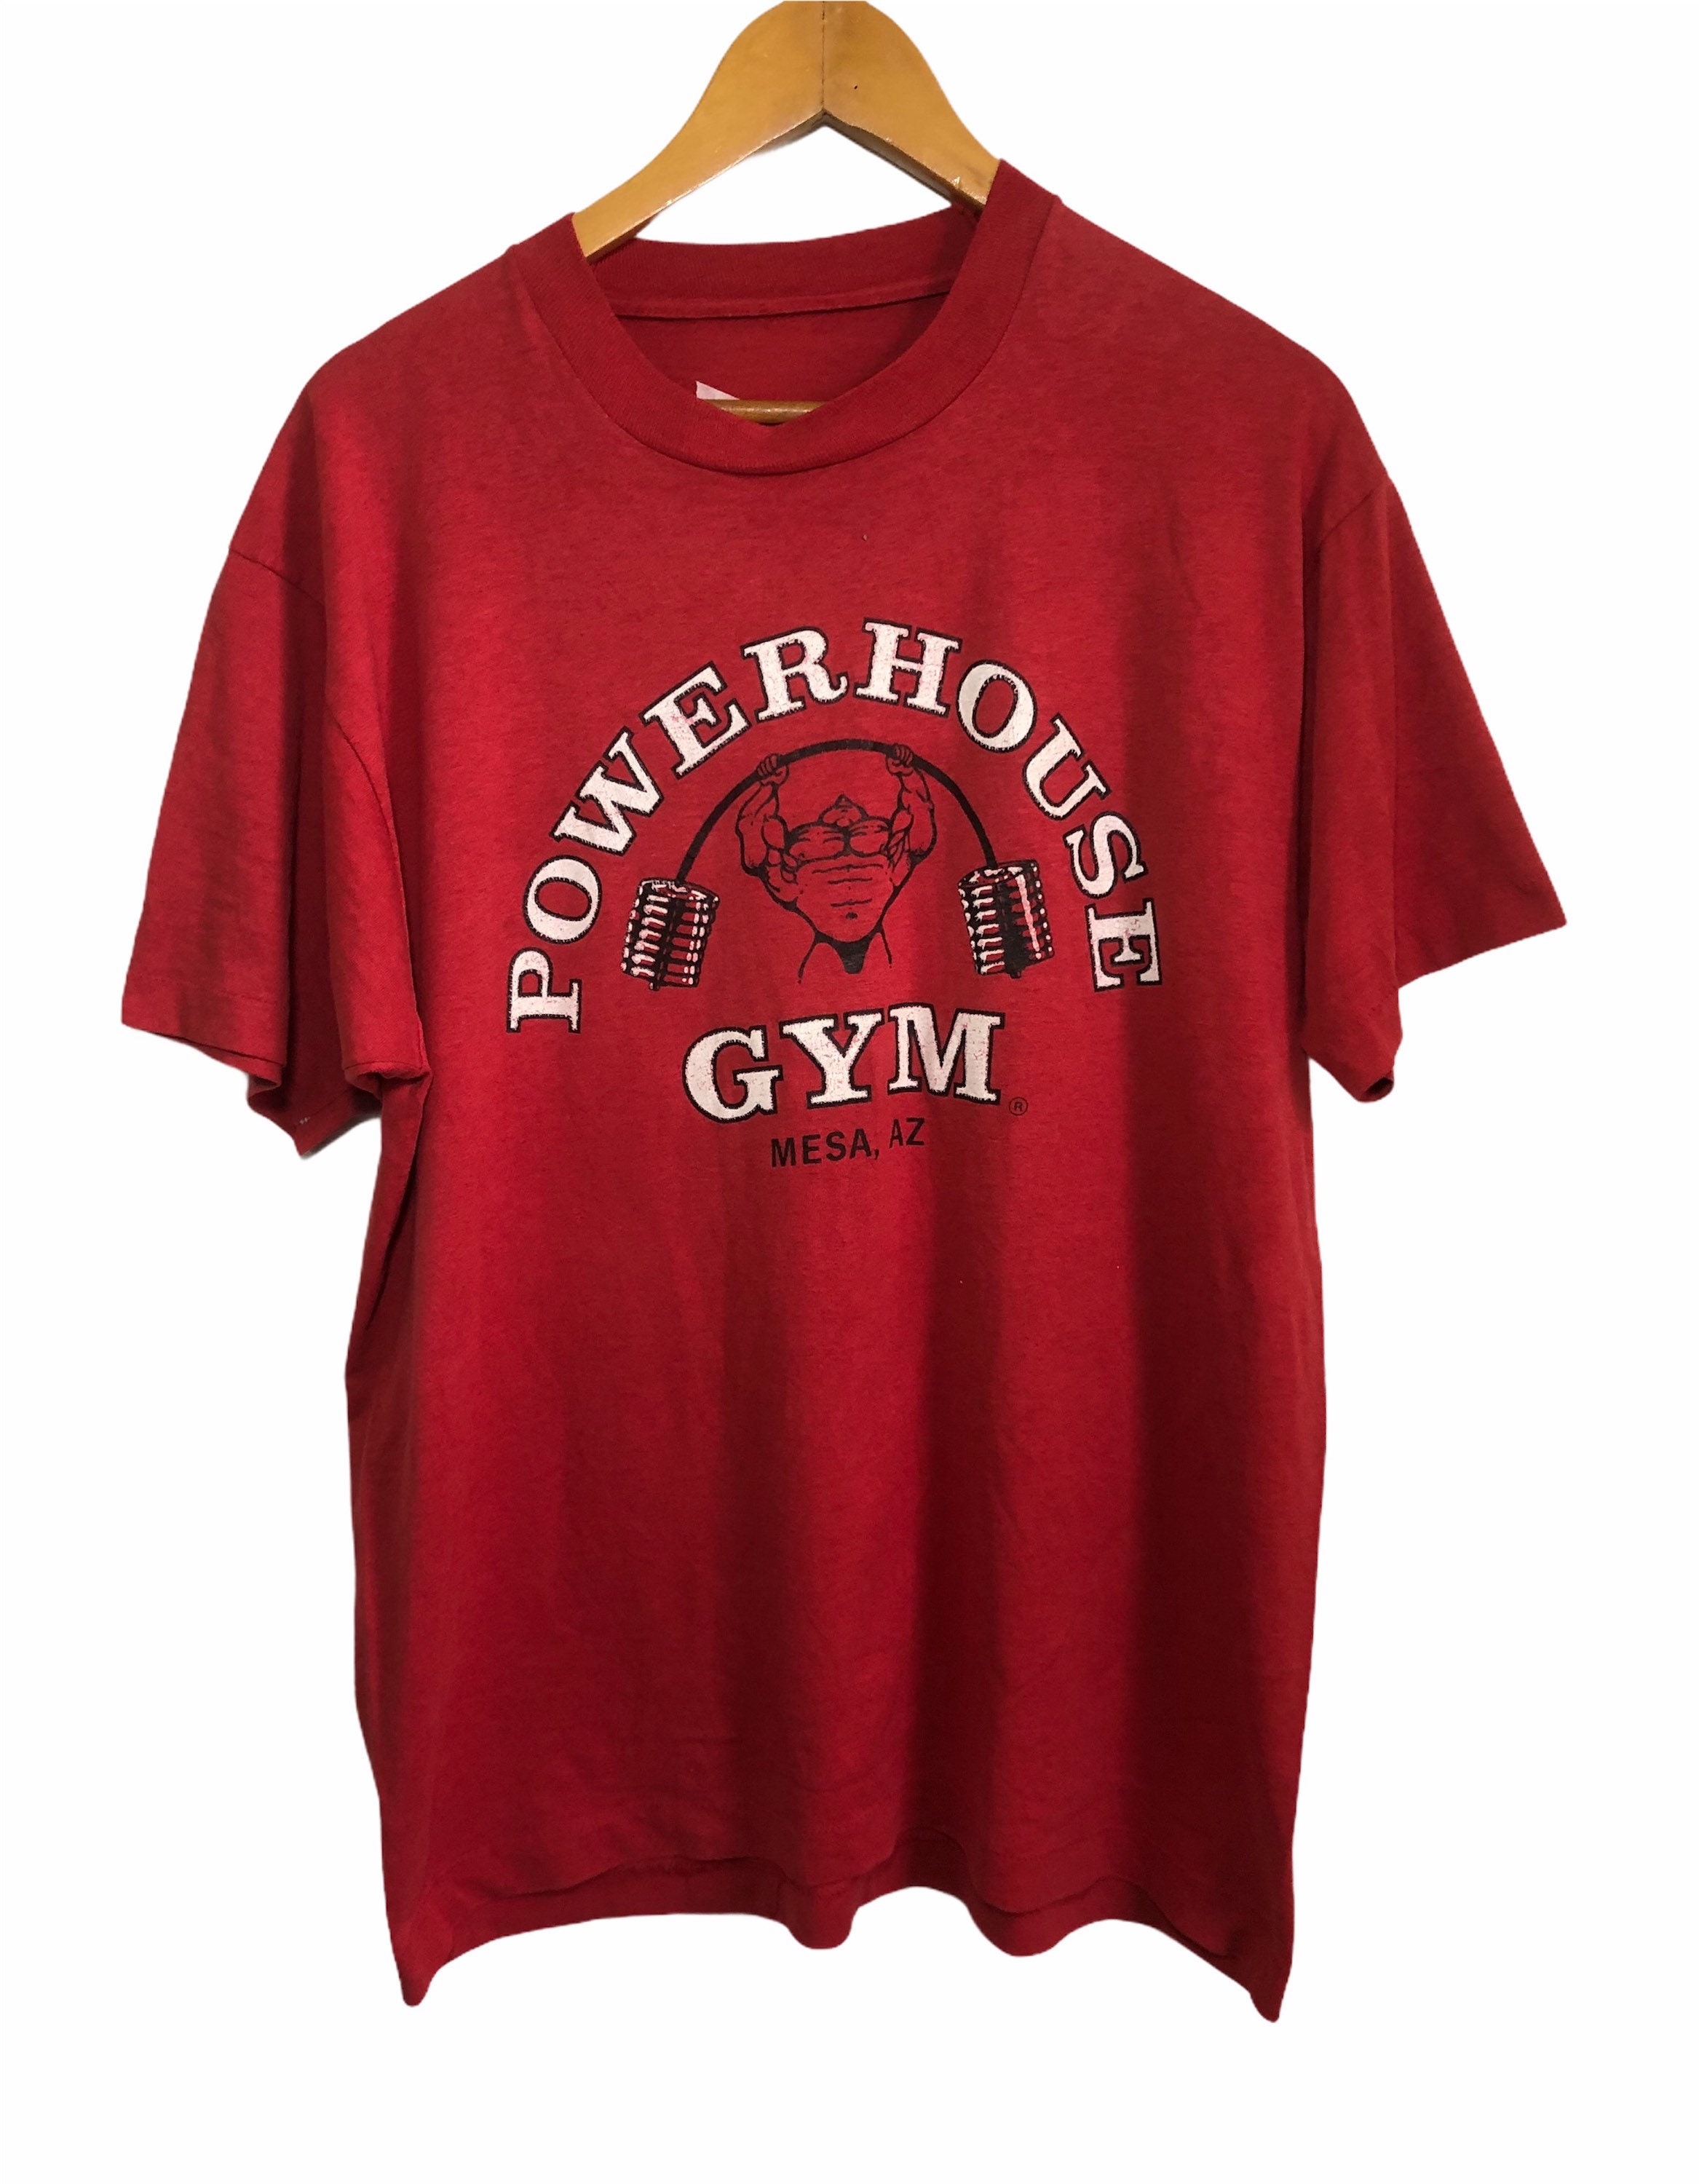 Vintage 90s Powerhouse Gym T Shirt | Etsy UK